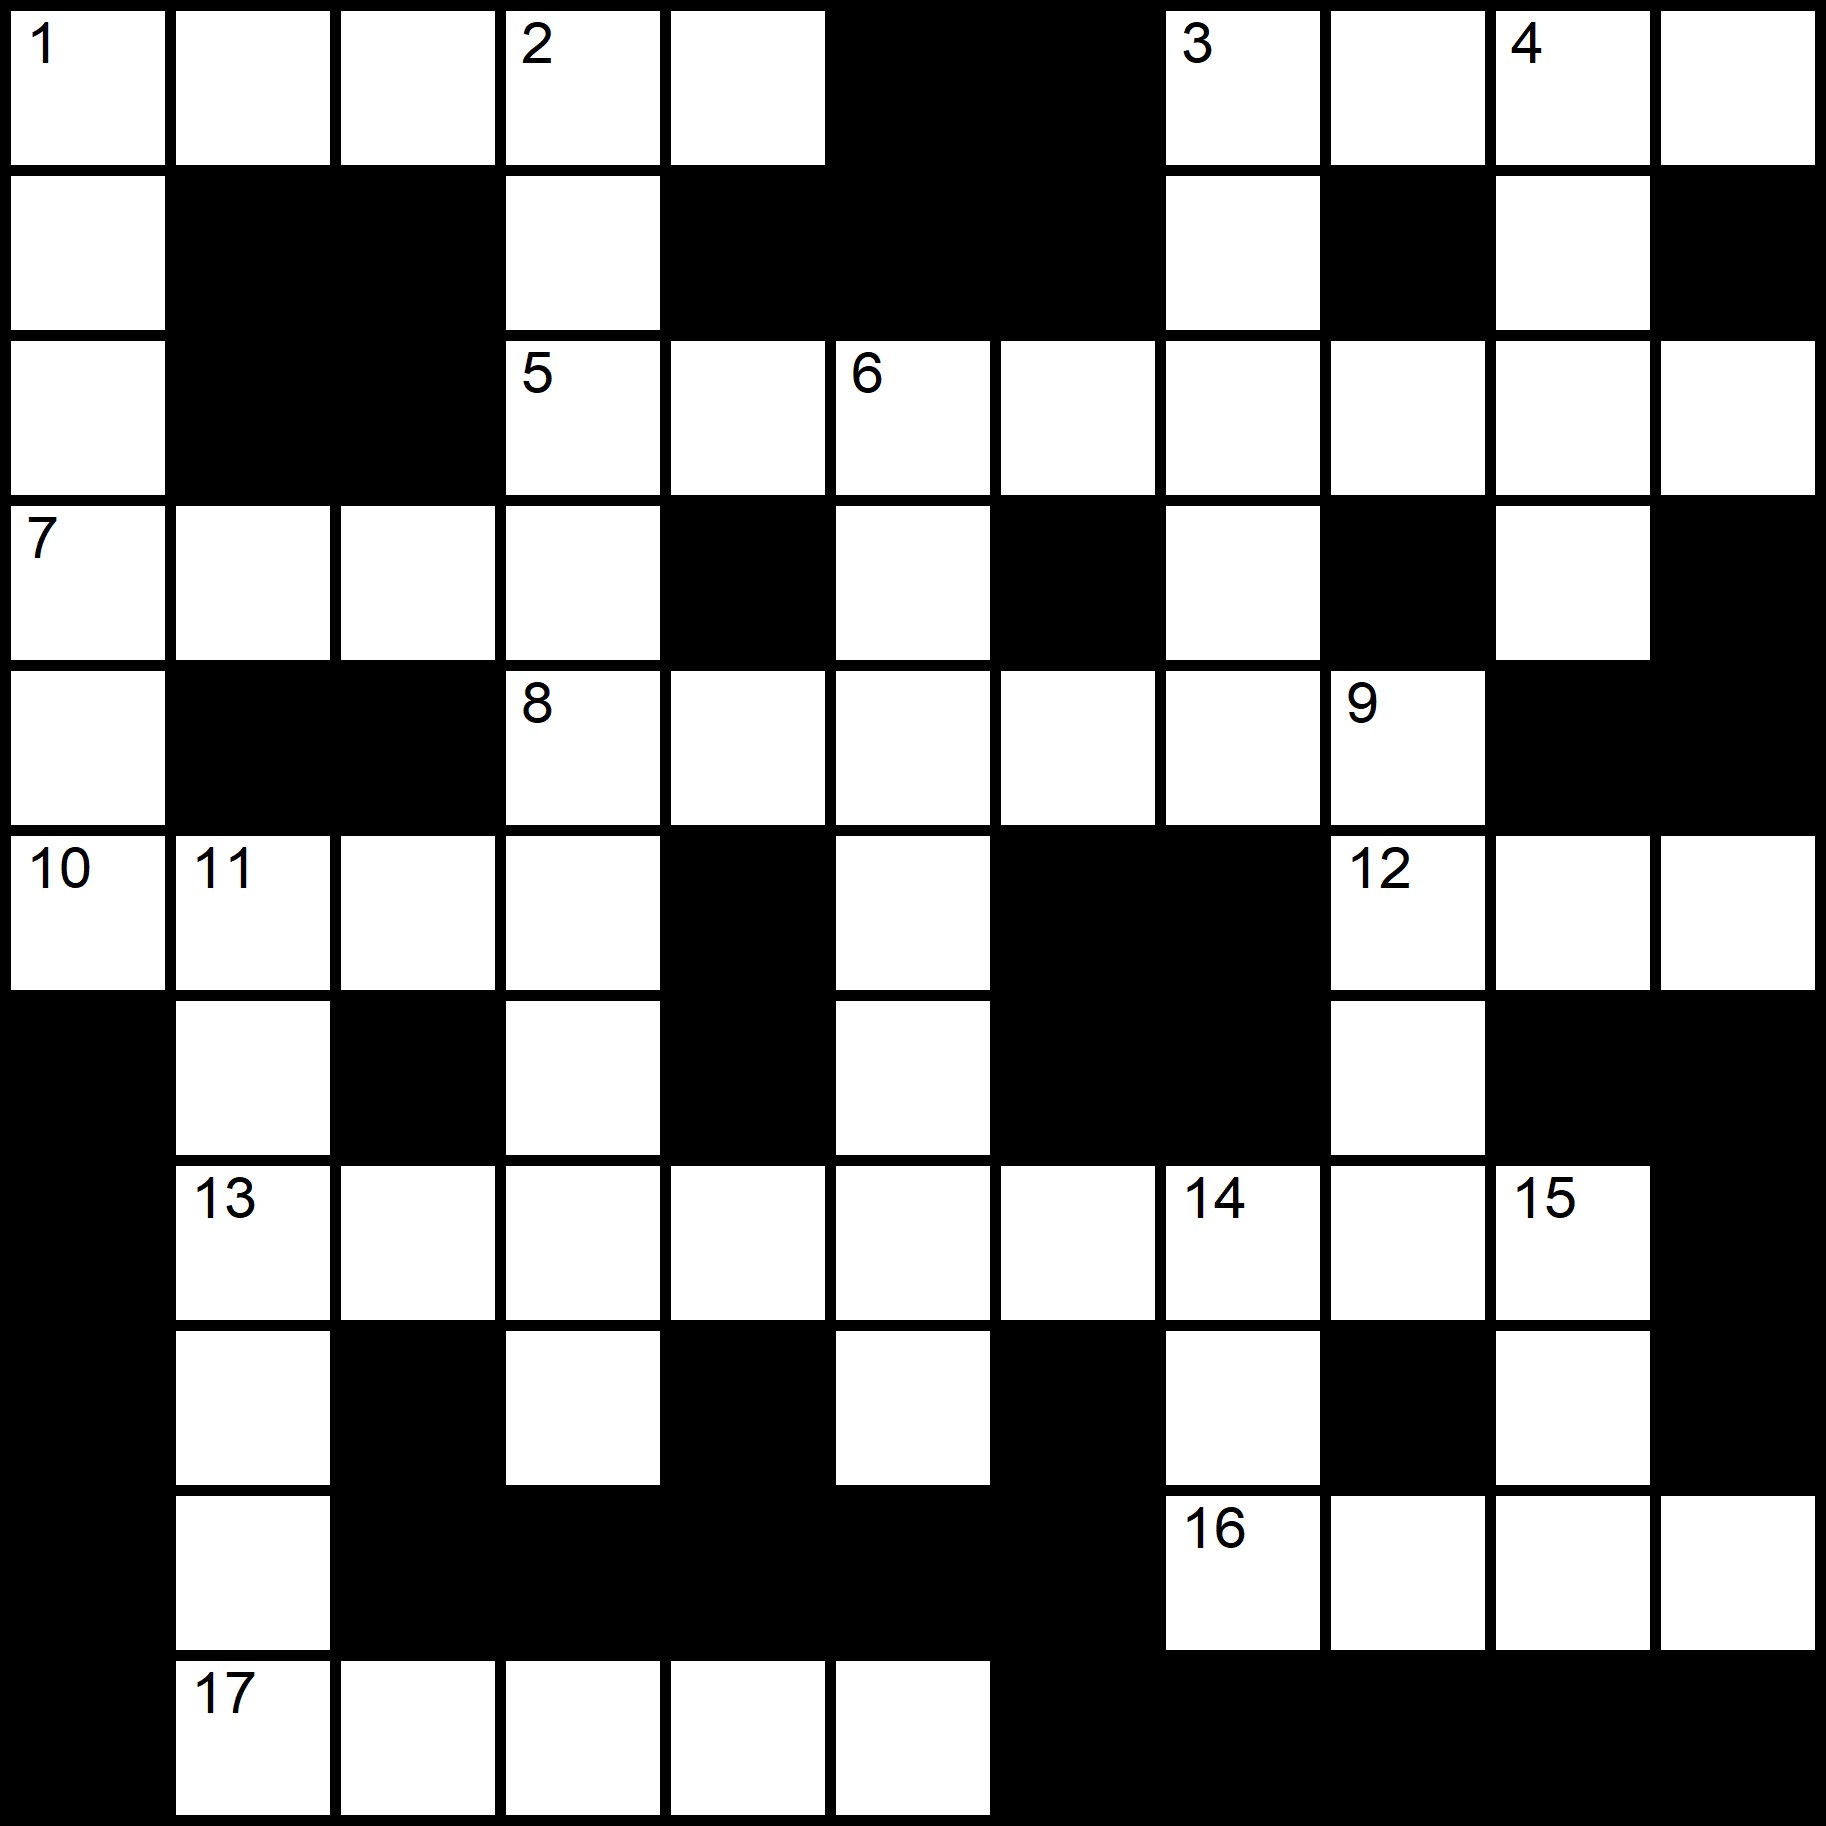 Free Crosswords -
Placidus Flora - Crossword number thirteen